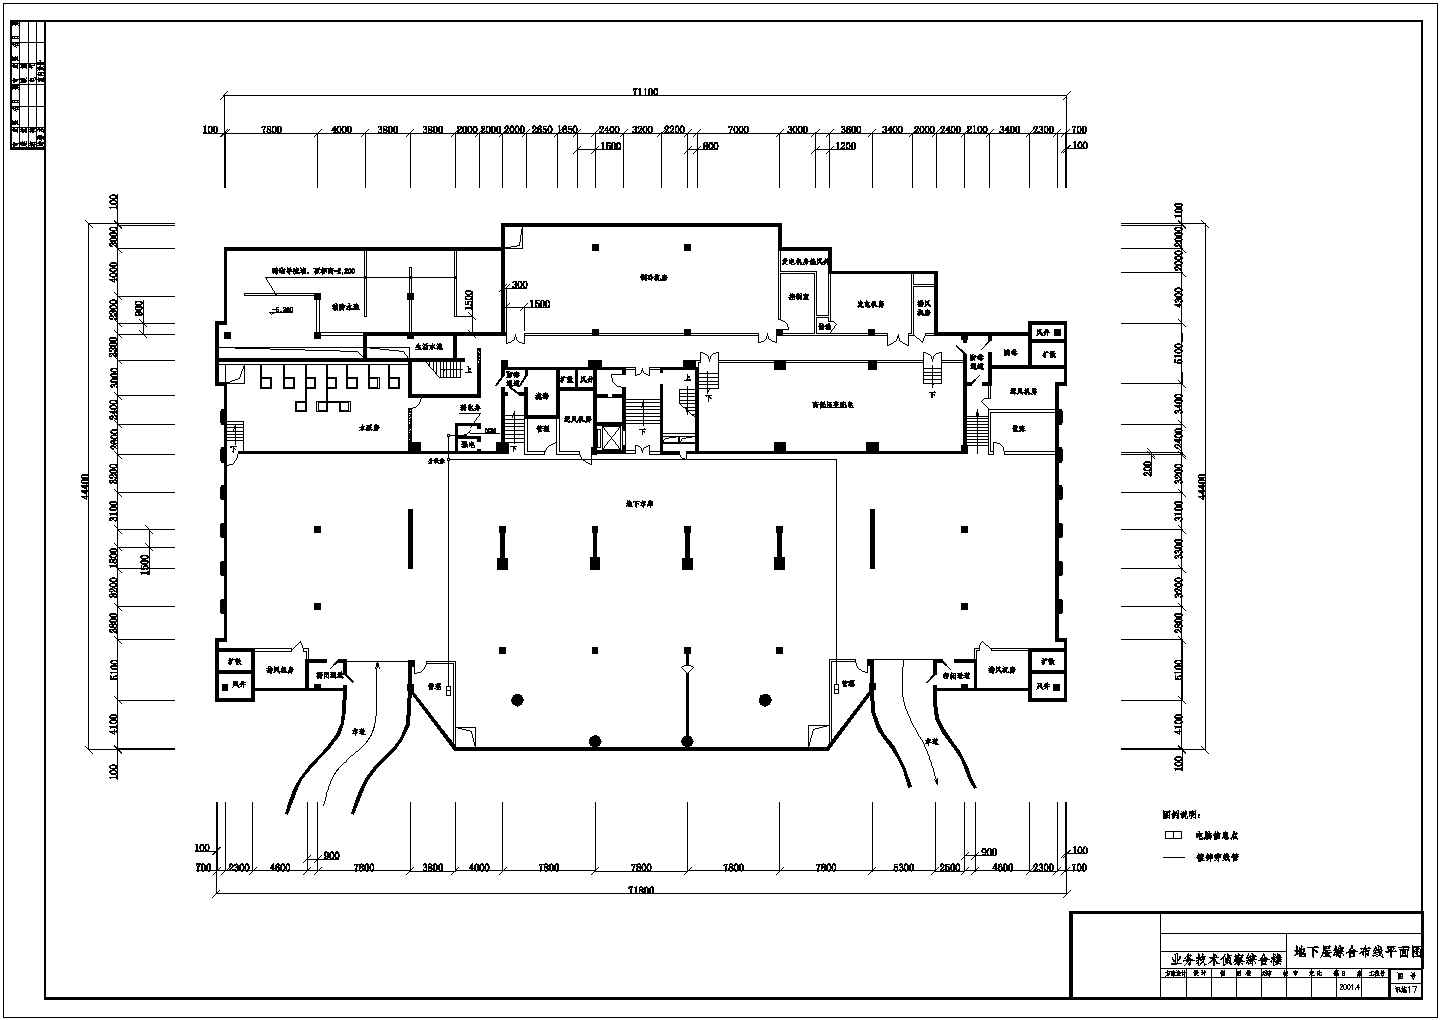 二十层办公大楼综合布线系统全套图纸